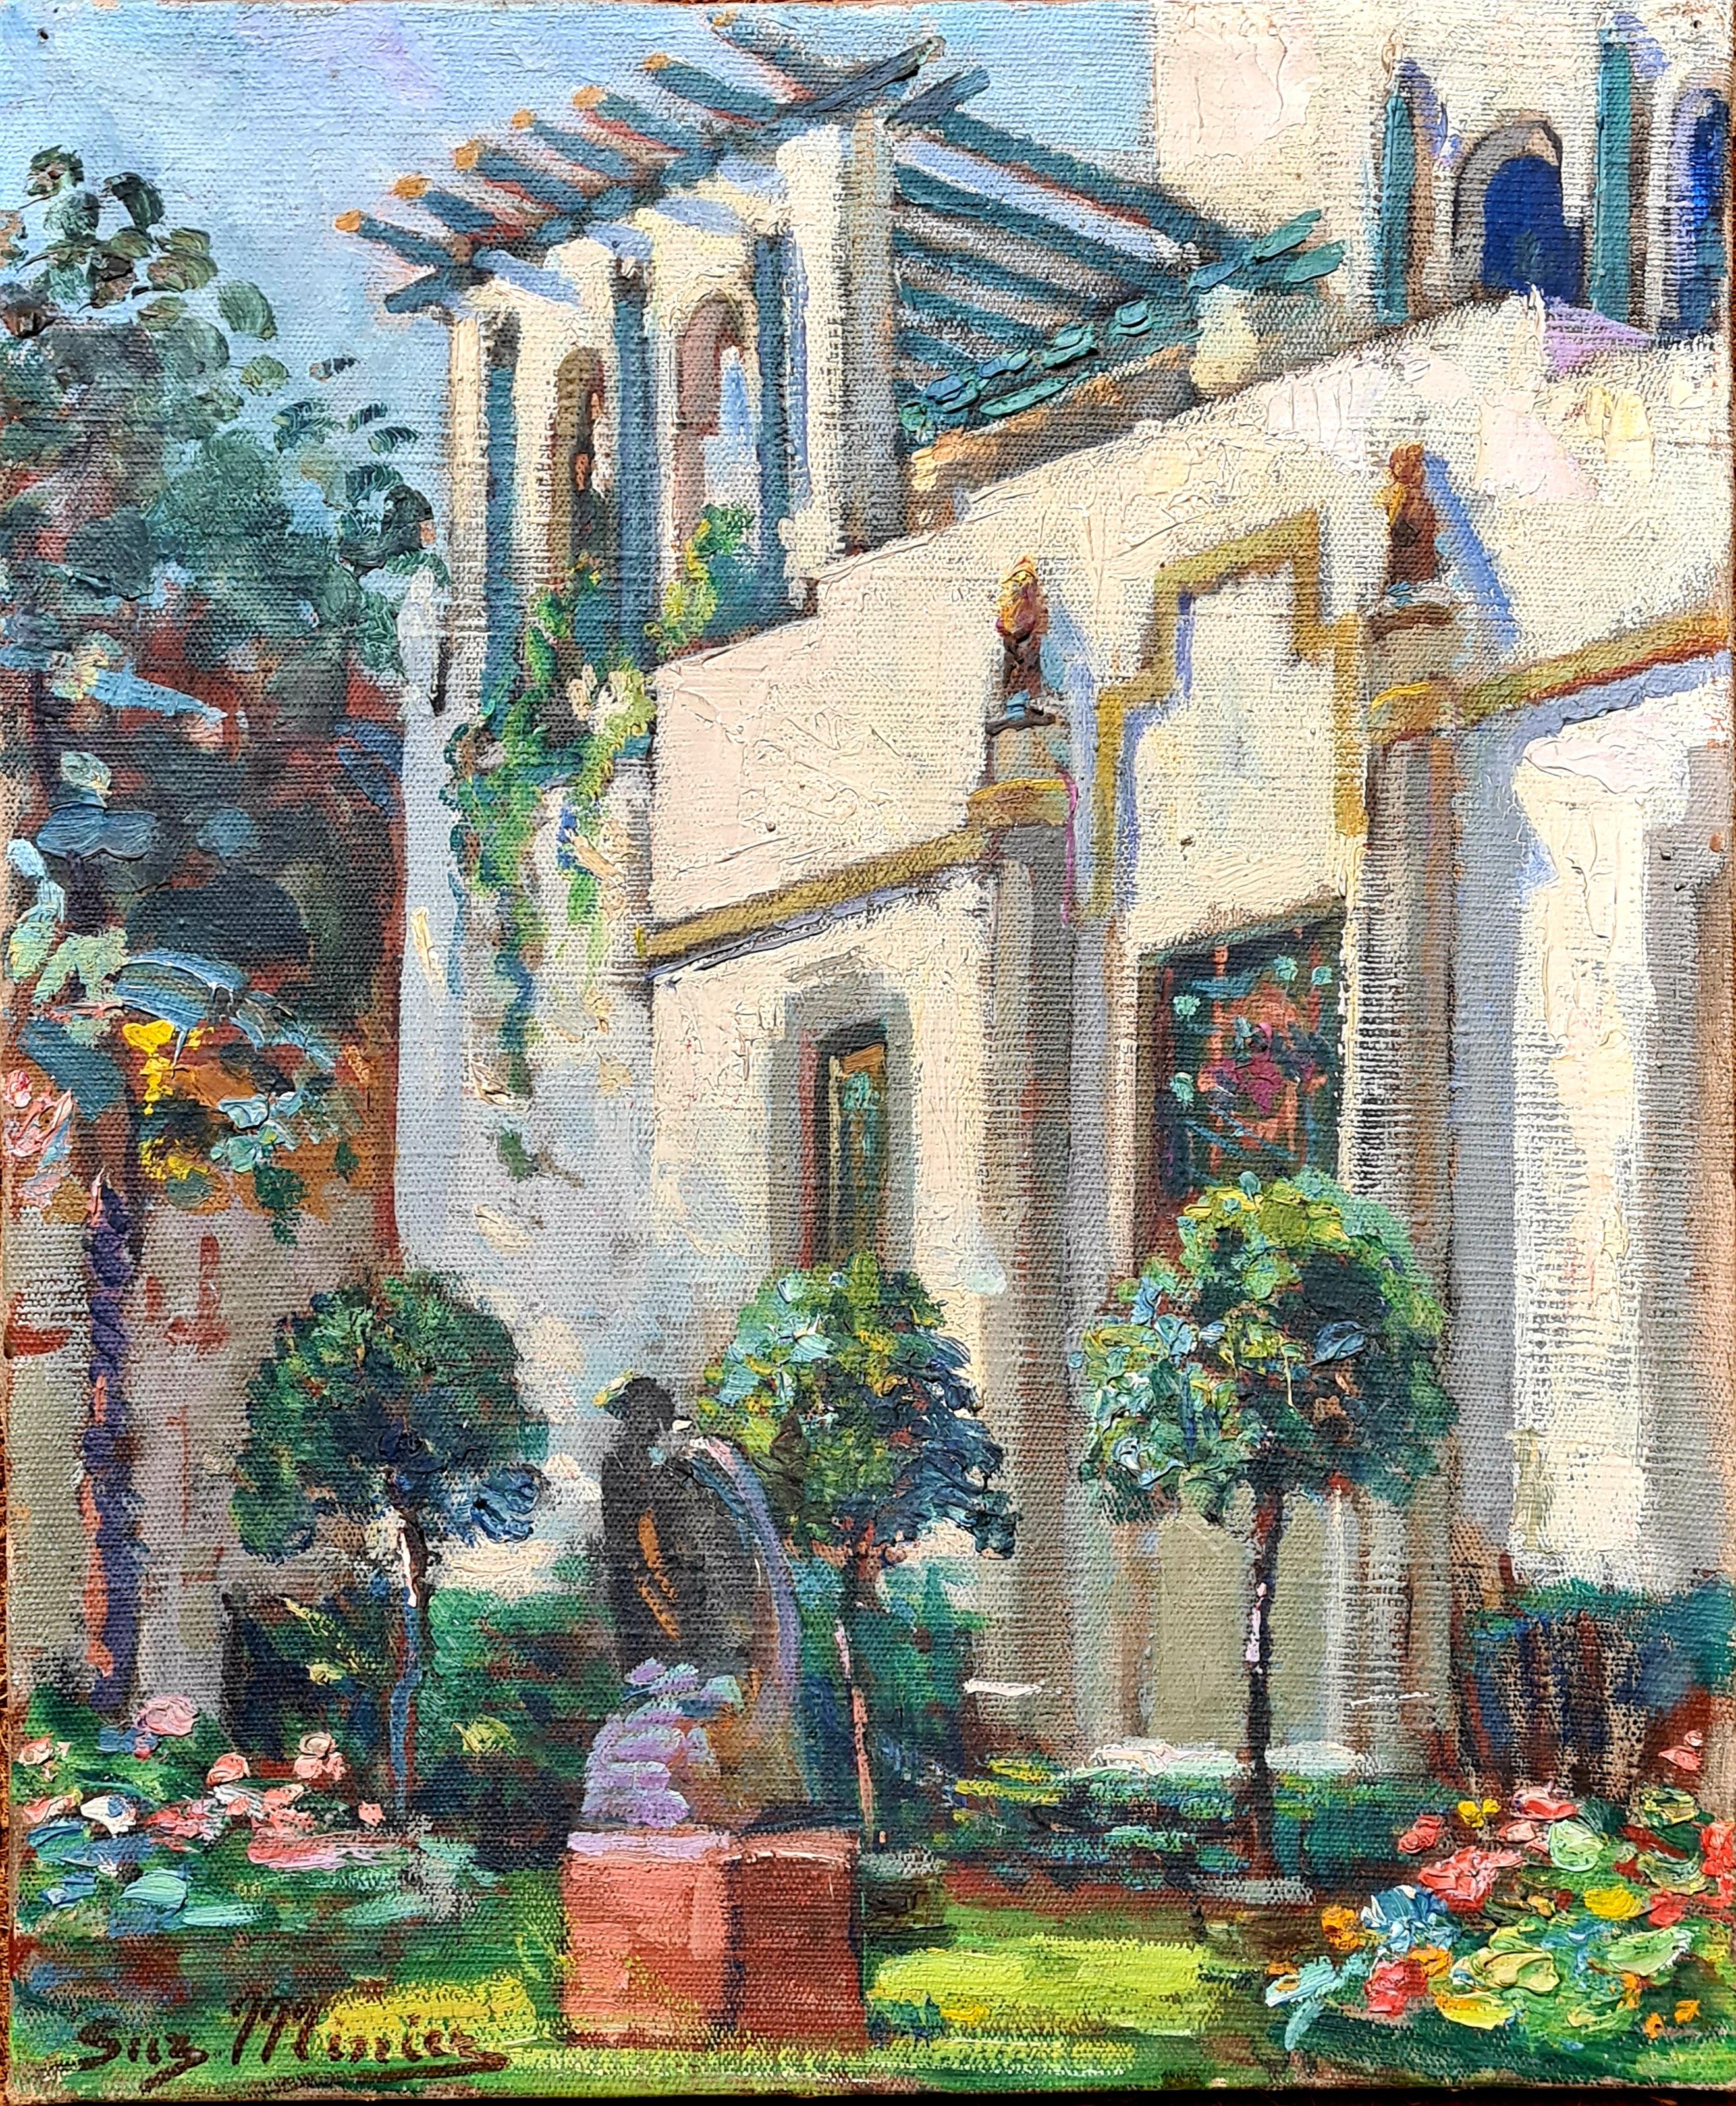 Moorish, Belle Epoque, Villa and Garden at St Tropez - Painting by Suzanne Minier